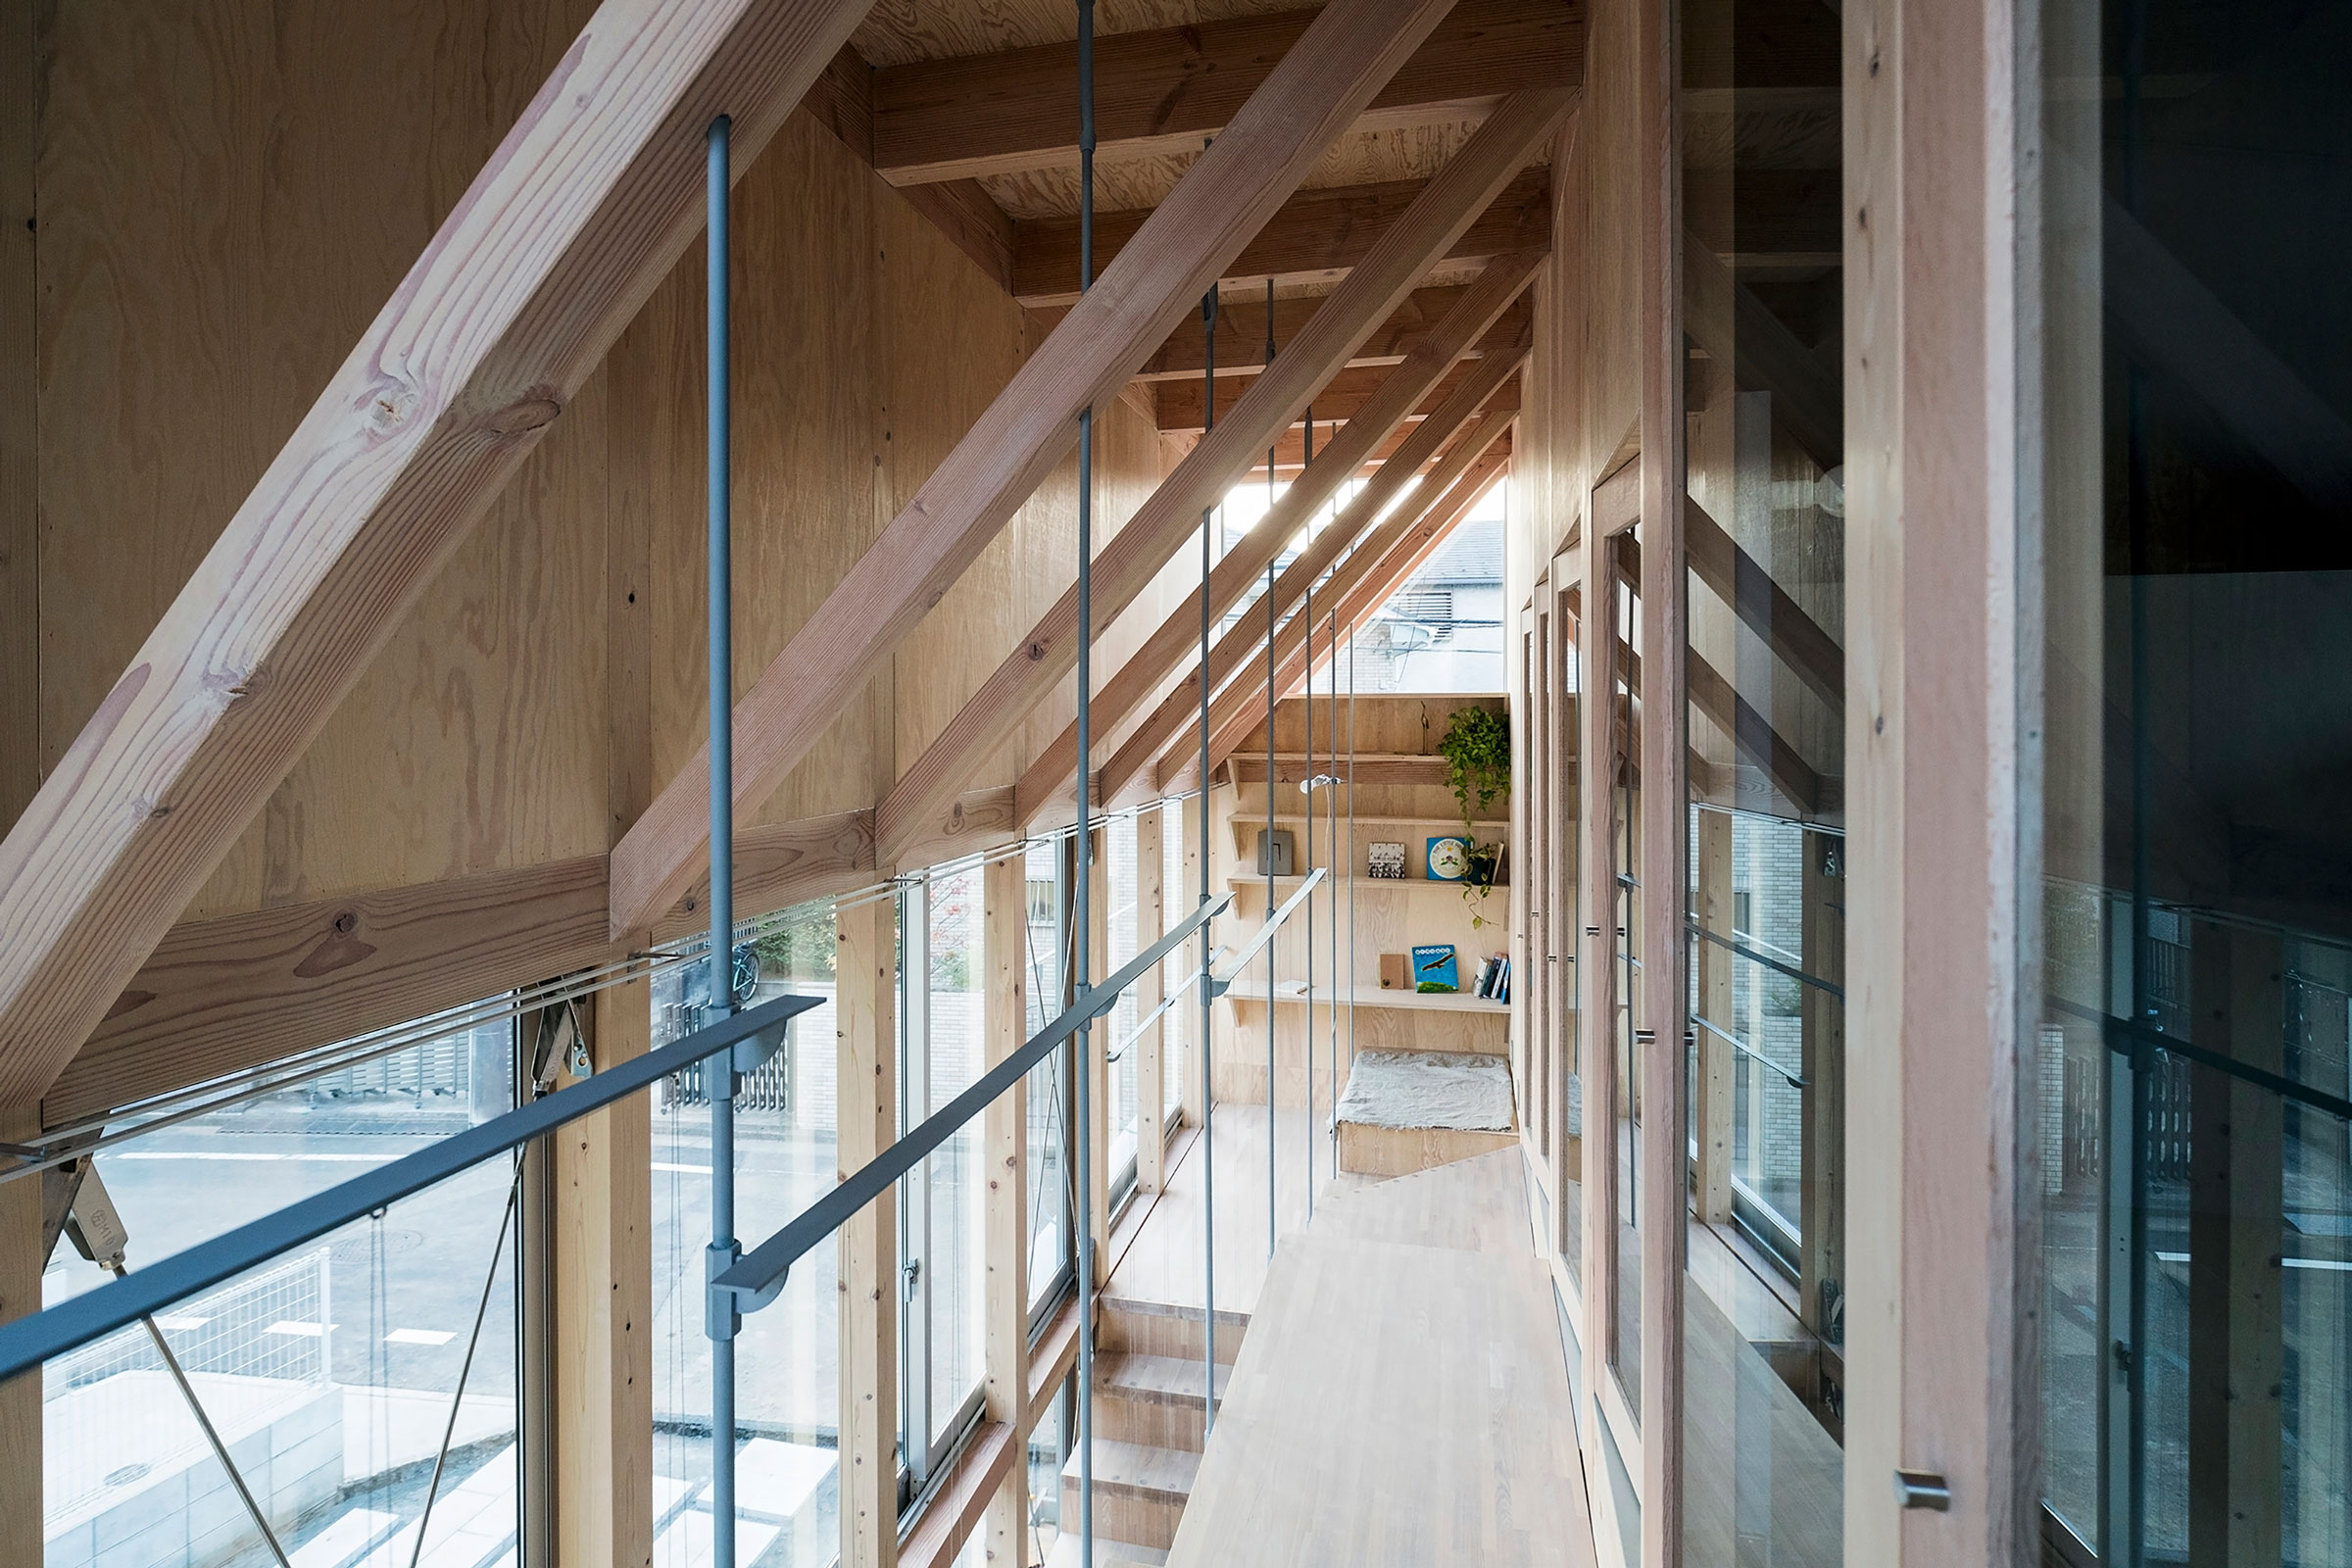 桐圭佑 / KIRI ARCHITECTSによる、東京・西東京市の住宅「明るい階段室 